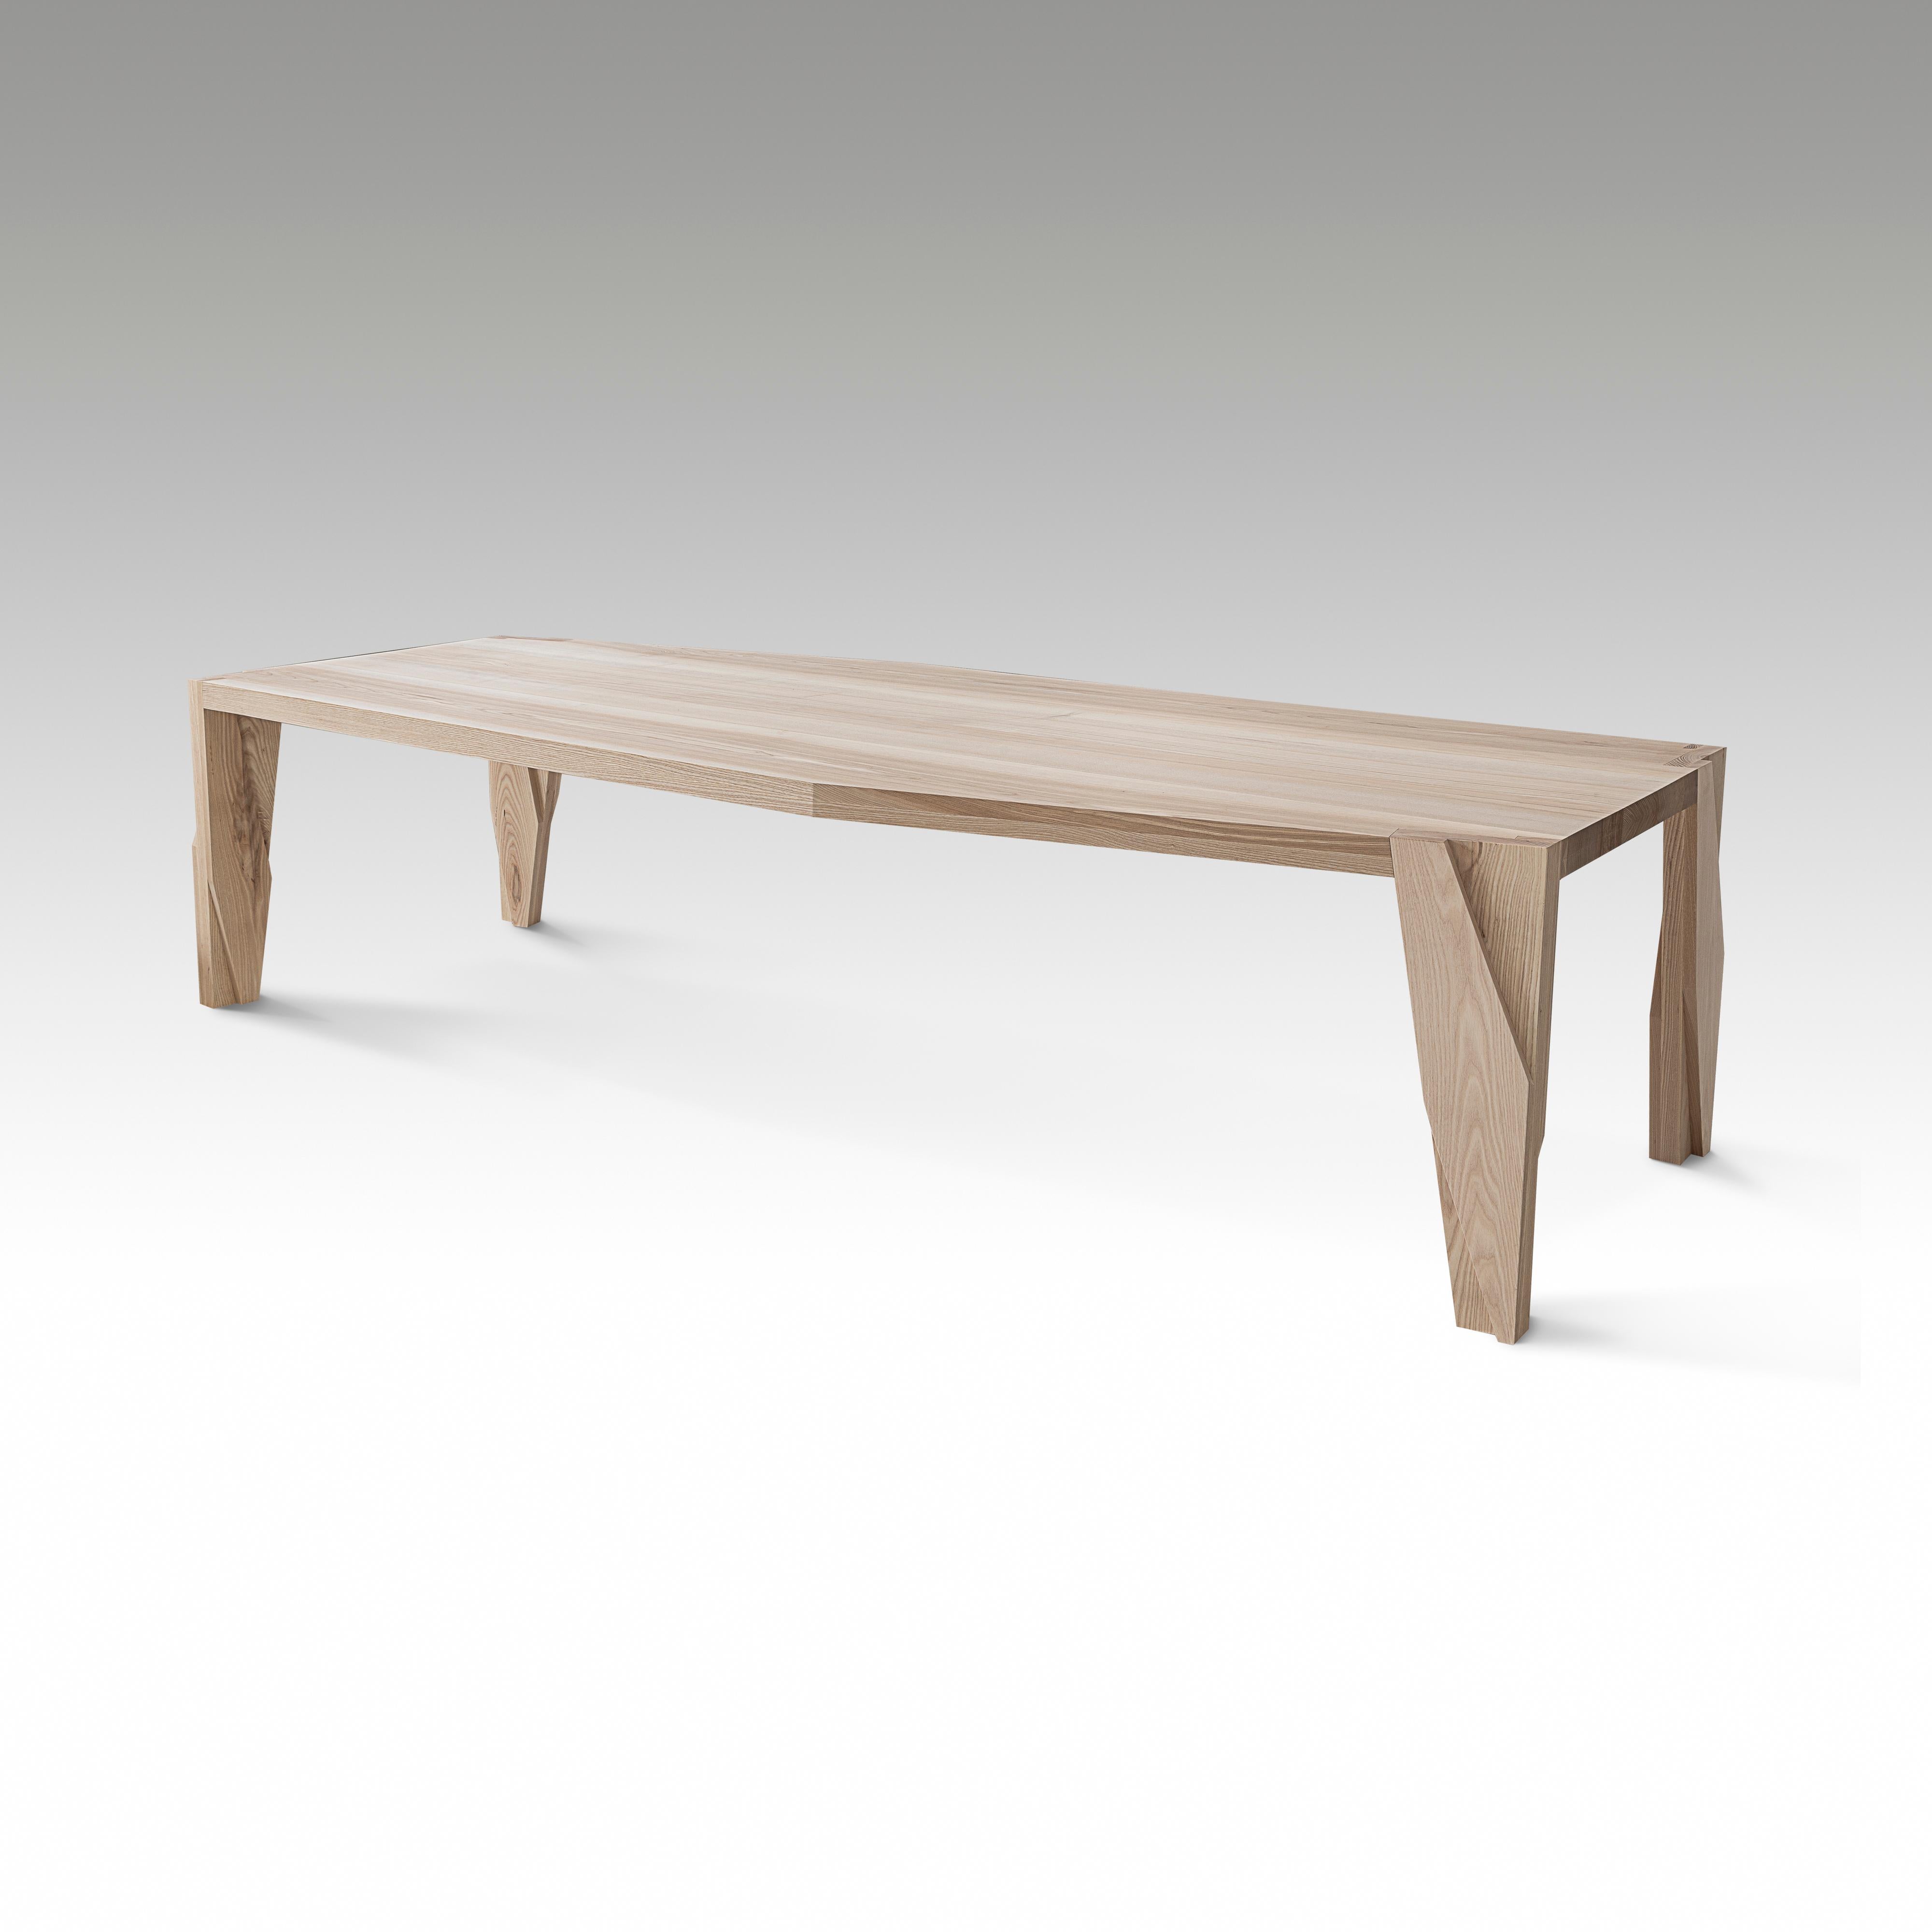 Table de salle à manger contemporaine en bois à 6 places, Moramour par Adam Court pour OKHA

Design : Adam Court

Matériau : Frêne / Chêne (+ 1640 EUR) / Noyer (+ 7320 EUR)

Dimensions :
2850W X 1100D X 760H mm
112.2W X 43.3D X 29.9H